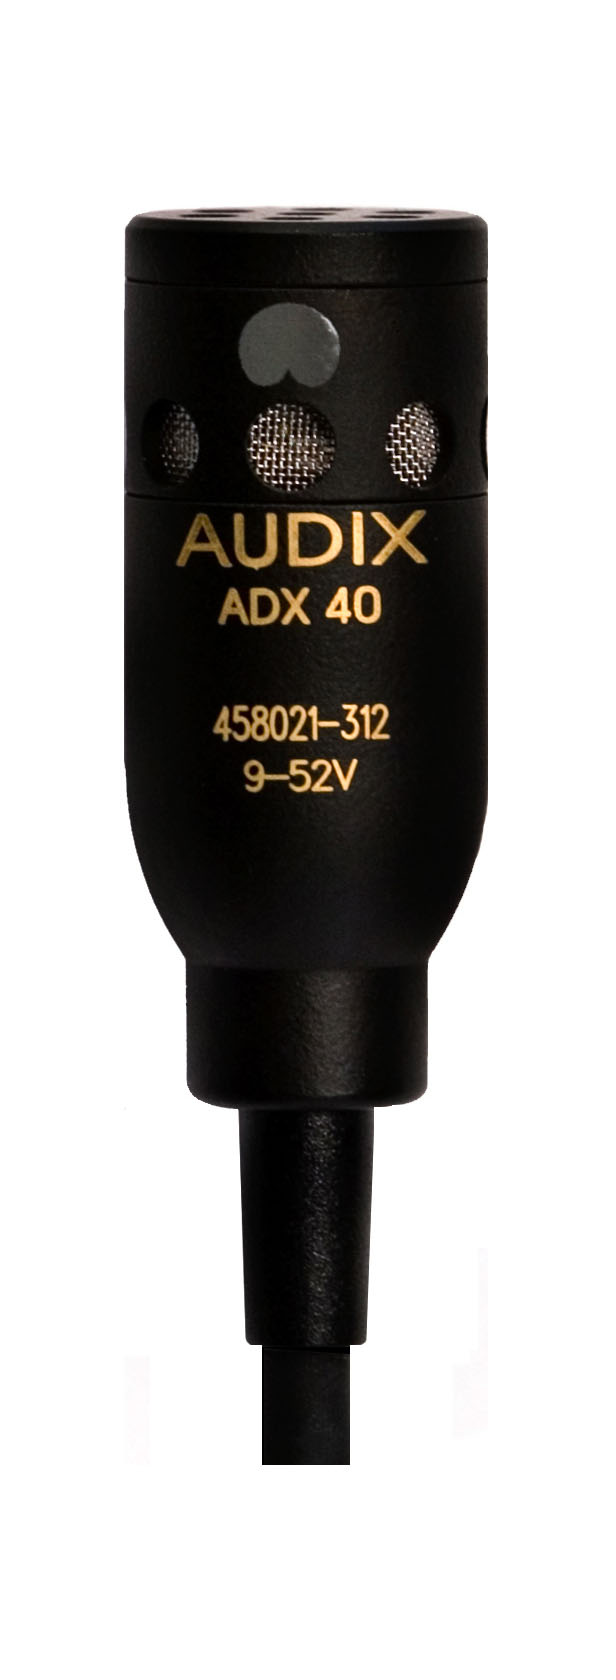 Специальные микрофоны AUDIX ADX40 специальные микрофоны audix adx40